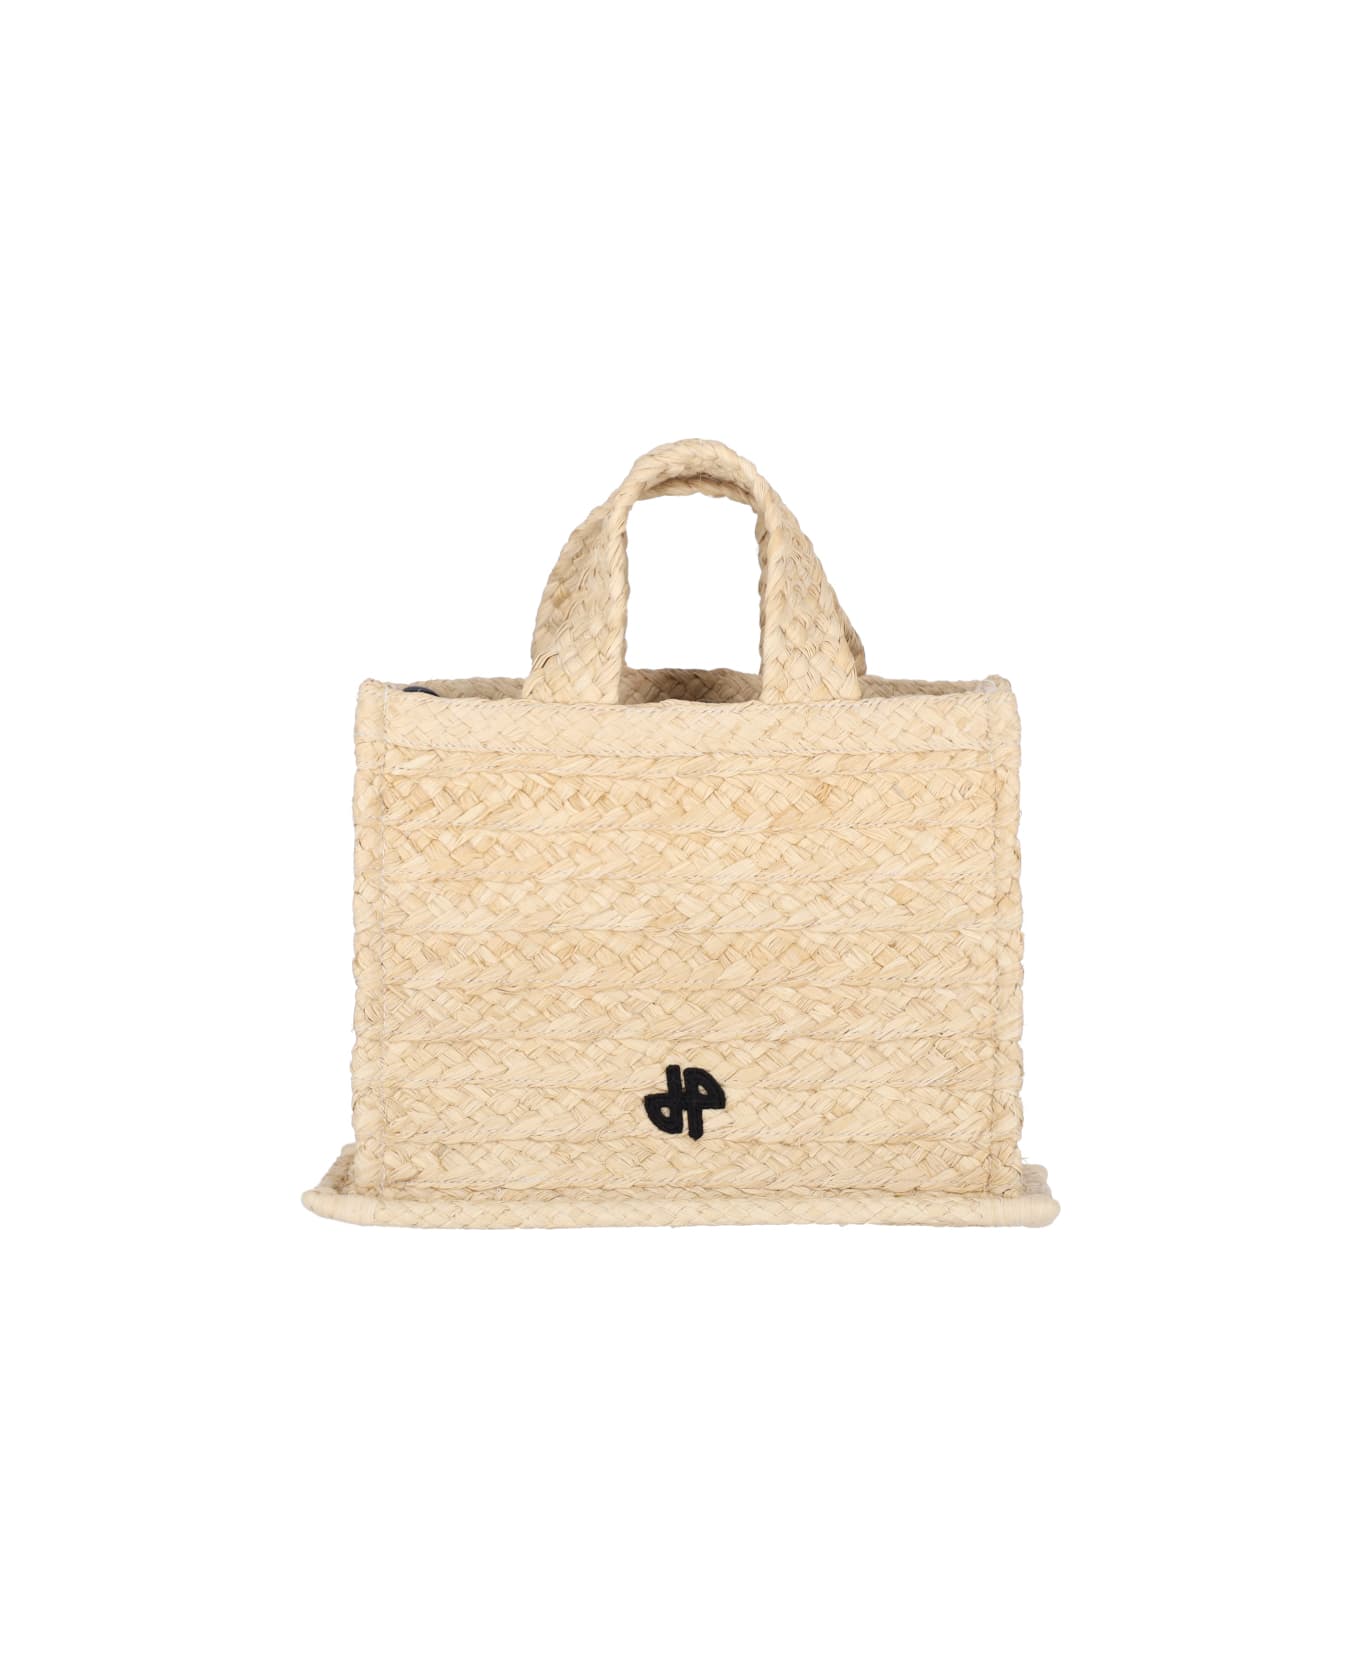 Patou Small Handbag 'jp' - VANILLA